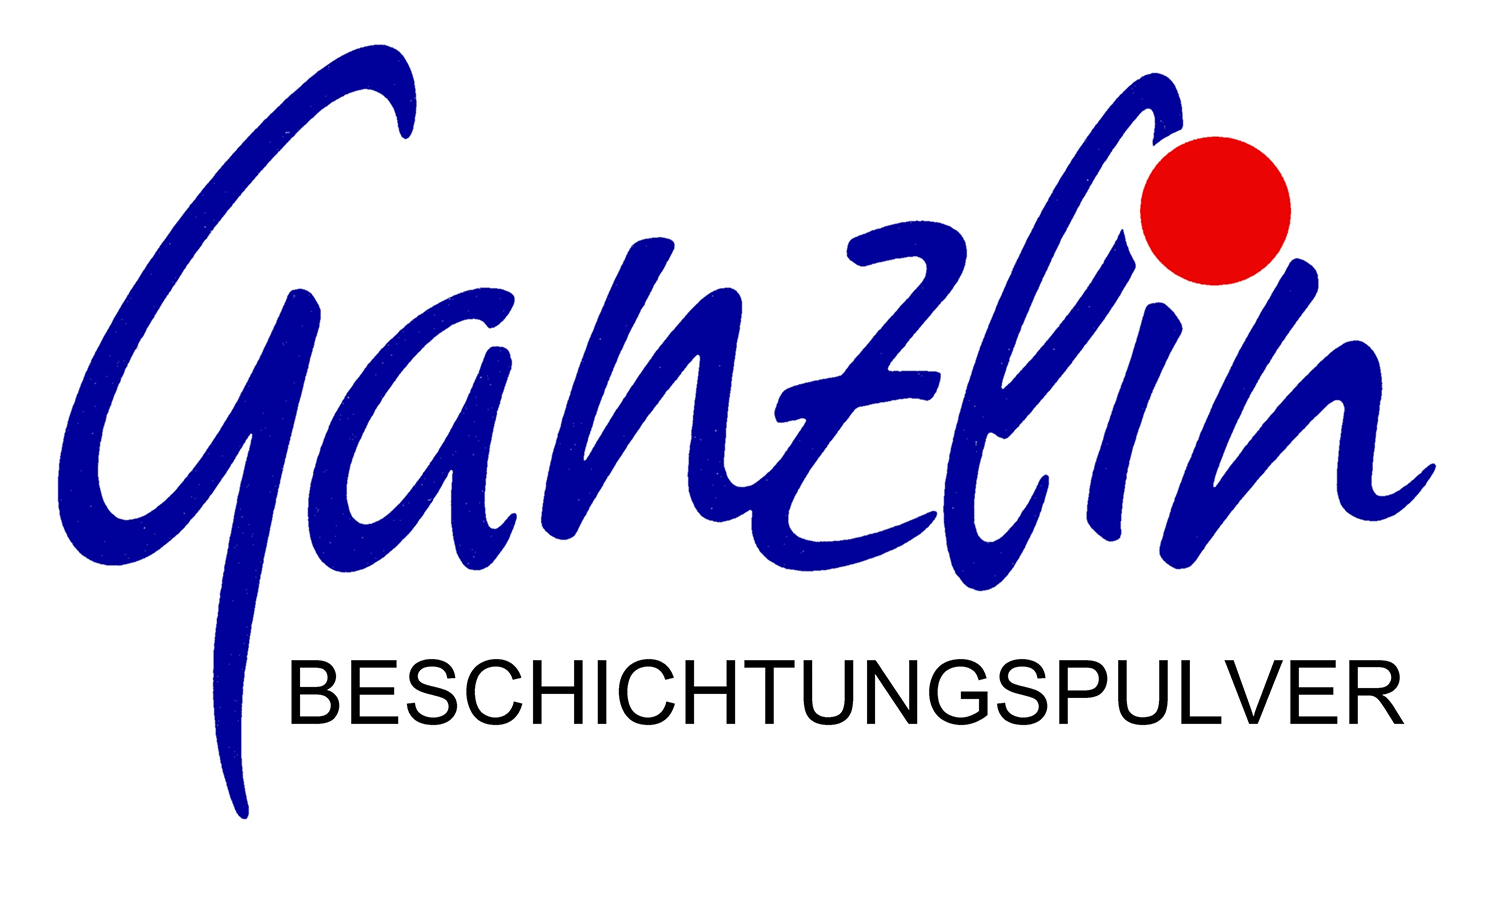 Ganzlin
Beschichtungspulver GmbH